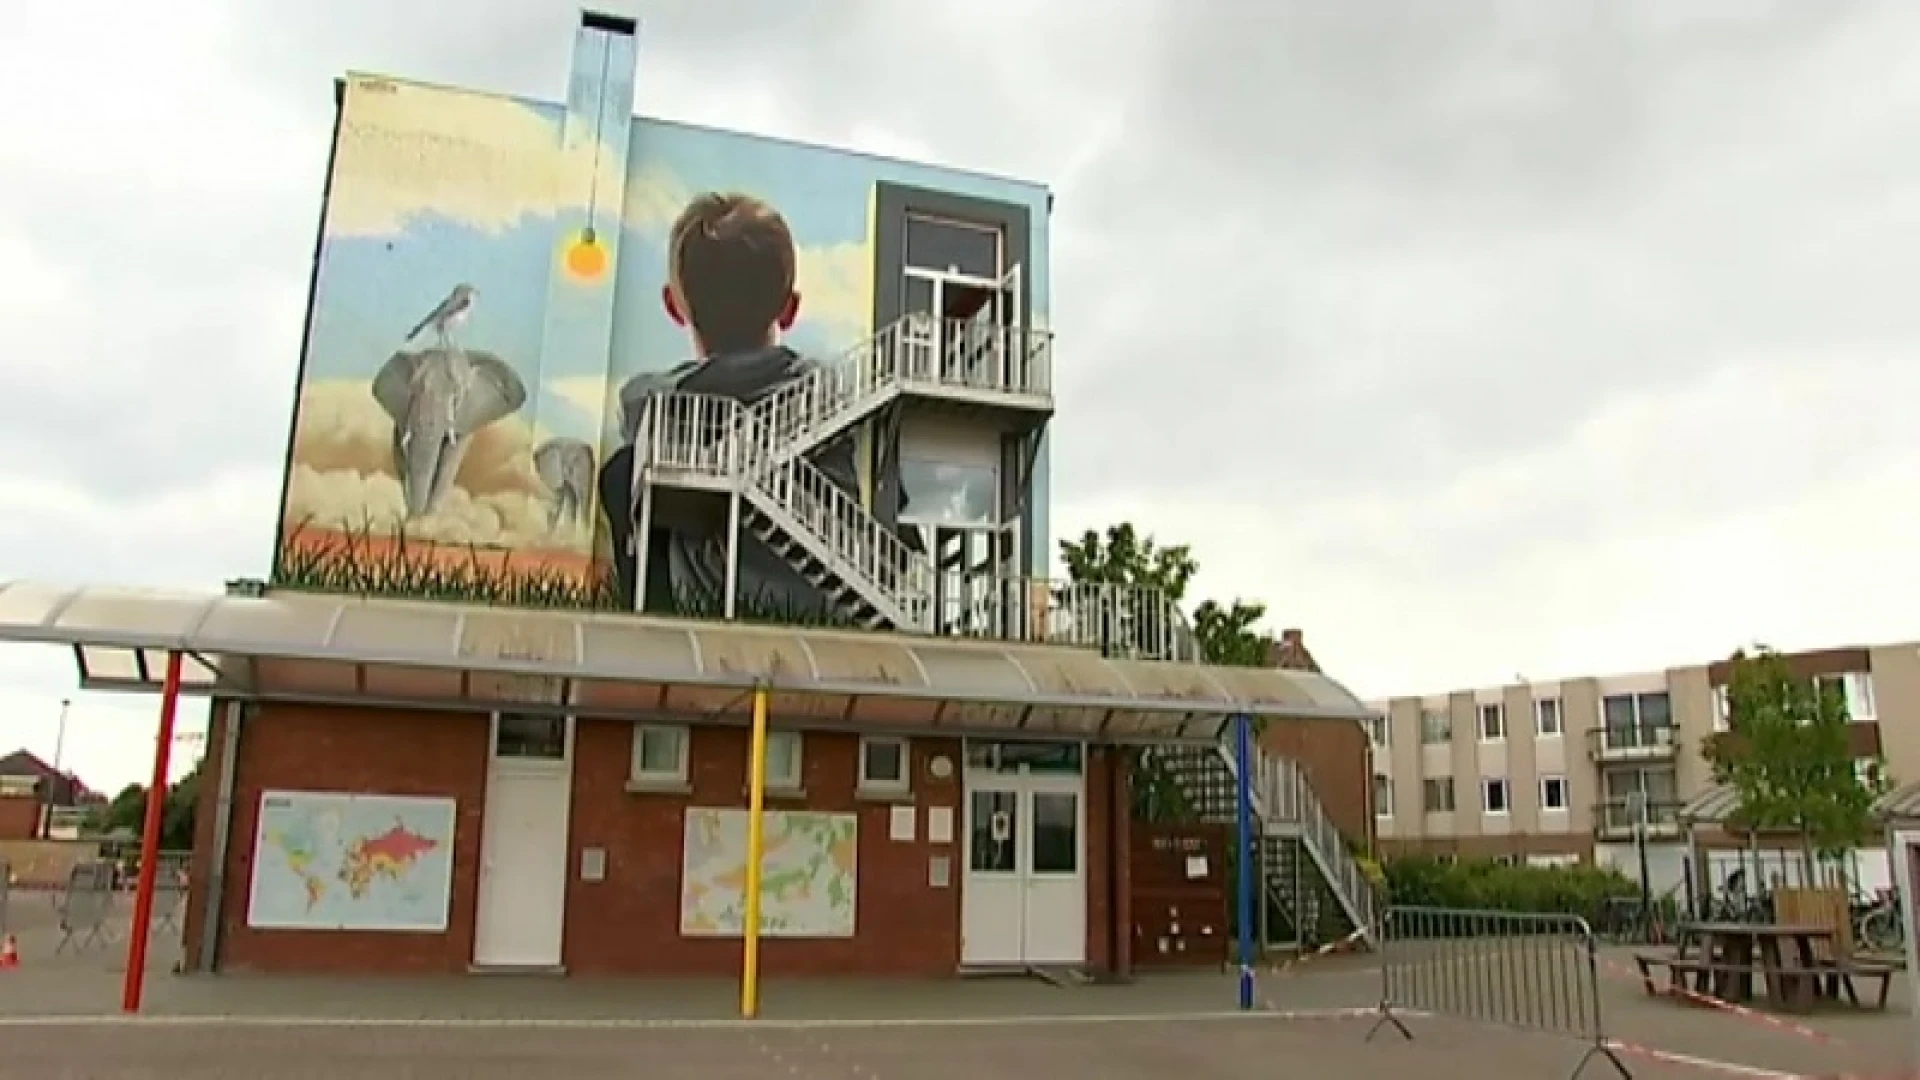 Prachtige muurschilderingen in onze regio verwelkomen leerlingen terug op school